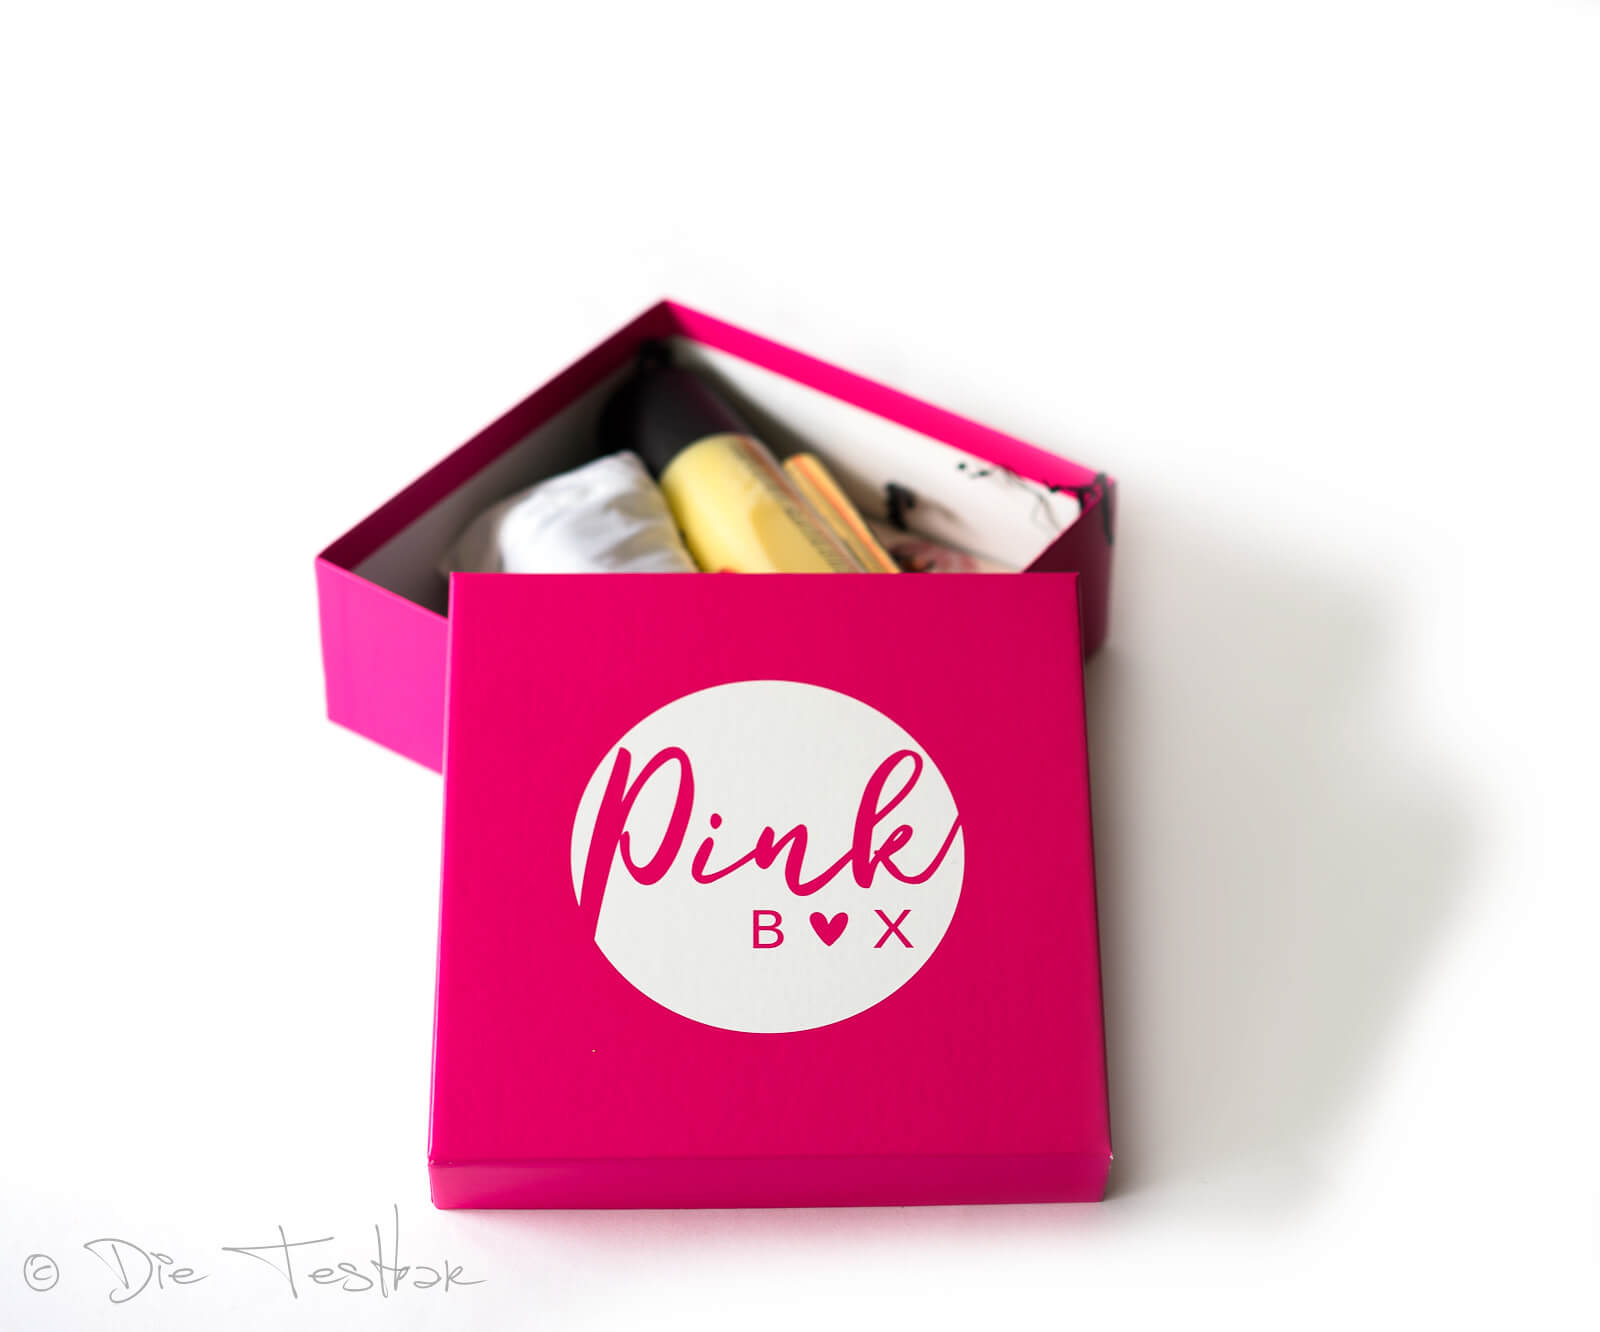 DIE PINK BOX im August 2021 – Pink Box Ciao Bella 2021